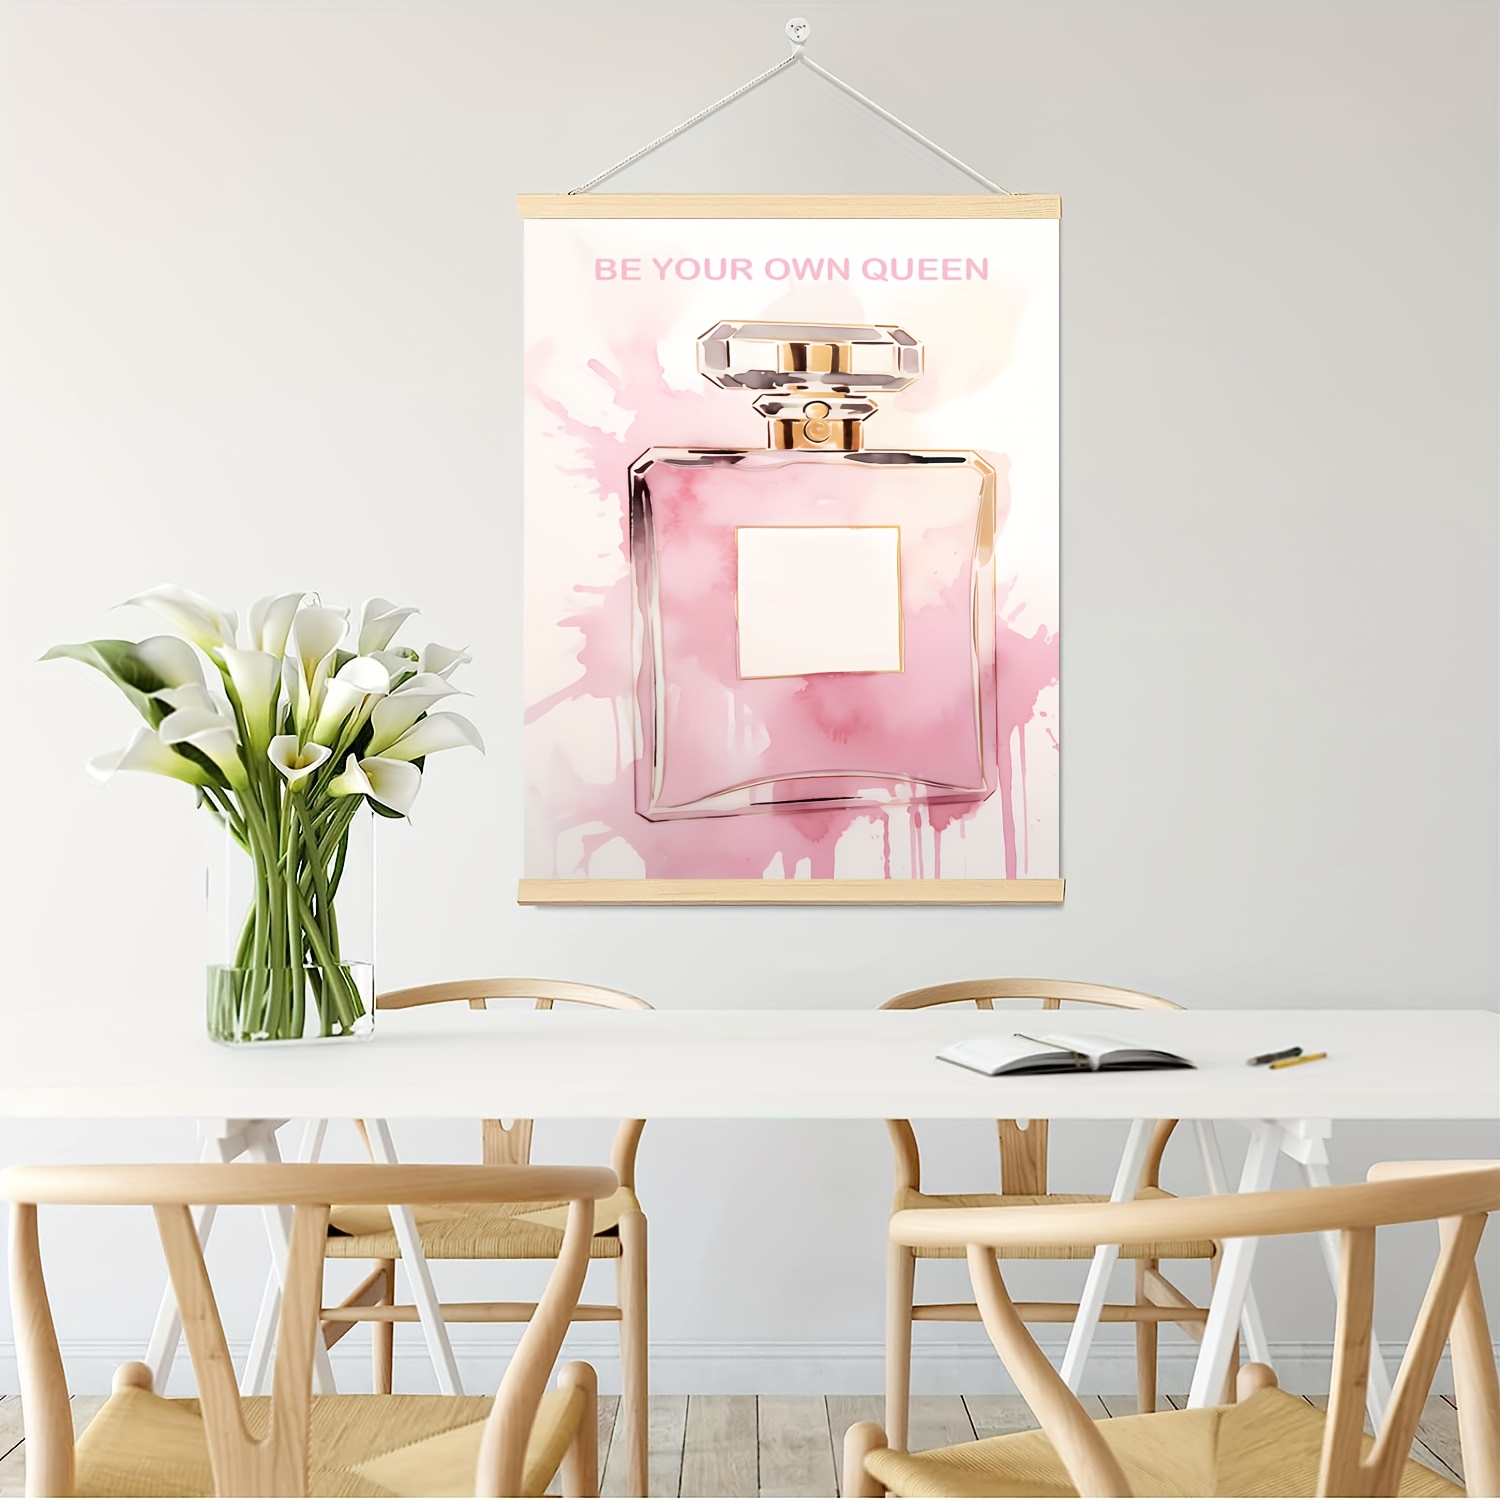 Fashion Glam Wall Art Decor Prints - Chanel Pink Wall Decor For Girls  Bedroom Makeup Room - Glam Decor Wall Posters - Perfume Handbag Makeup Art  